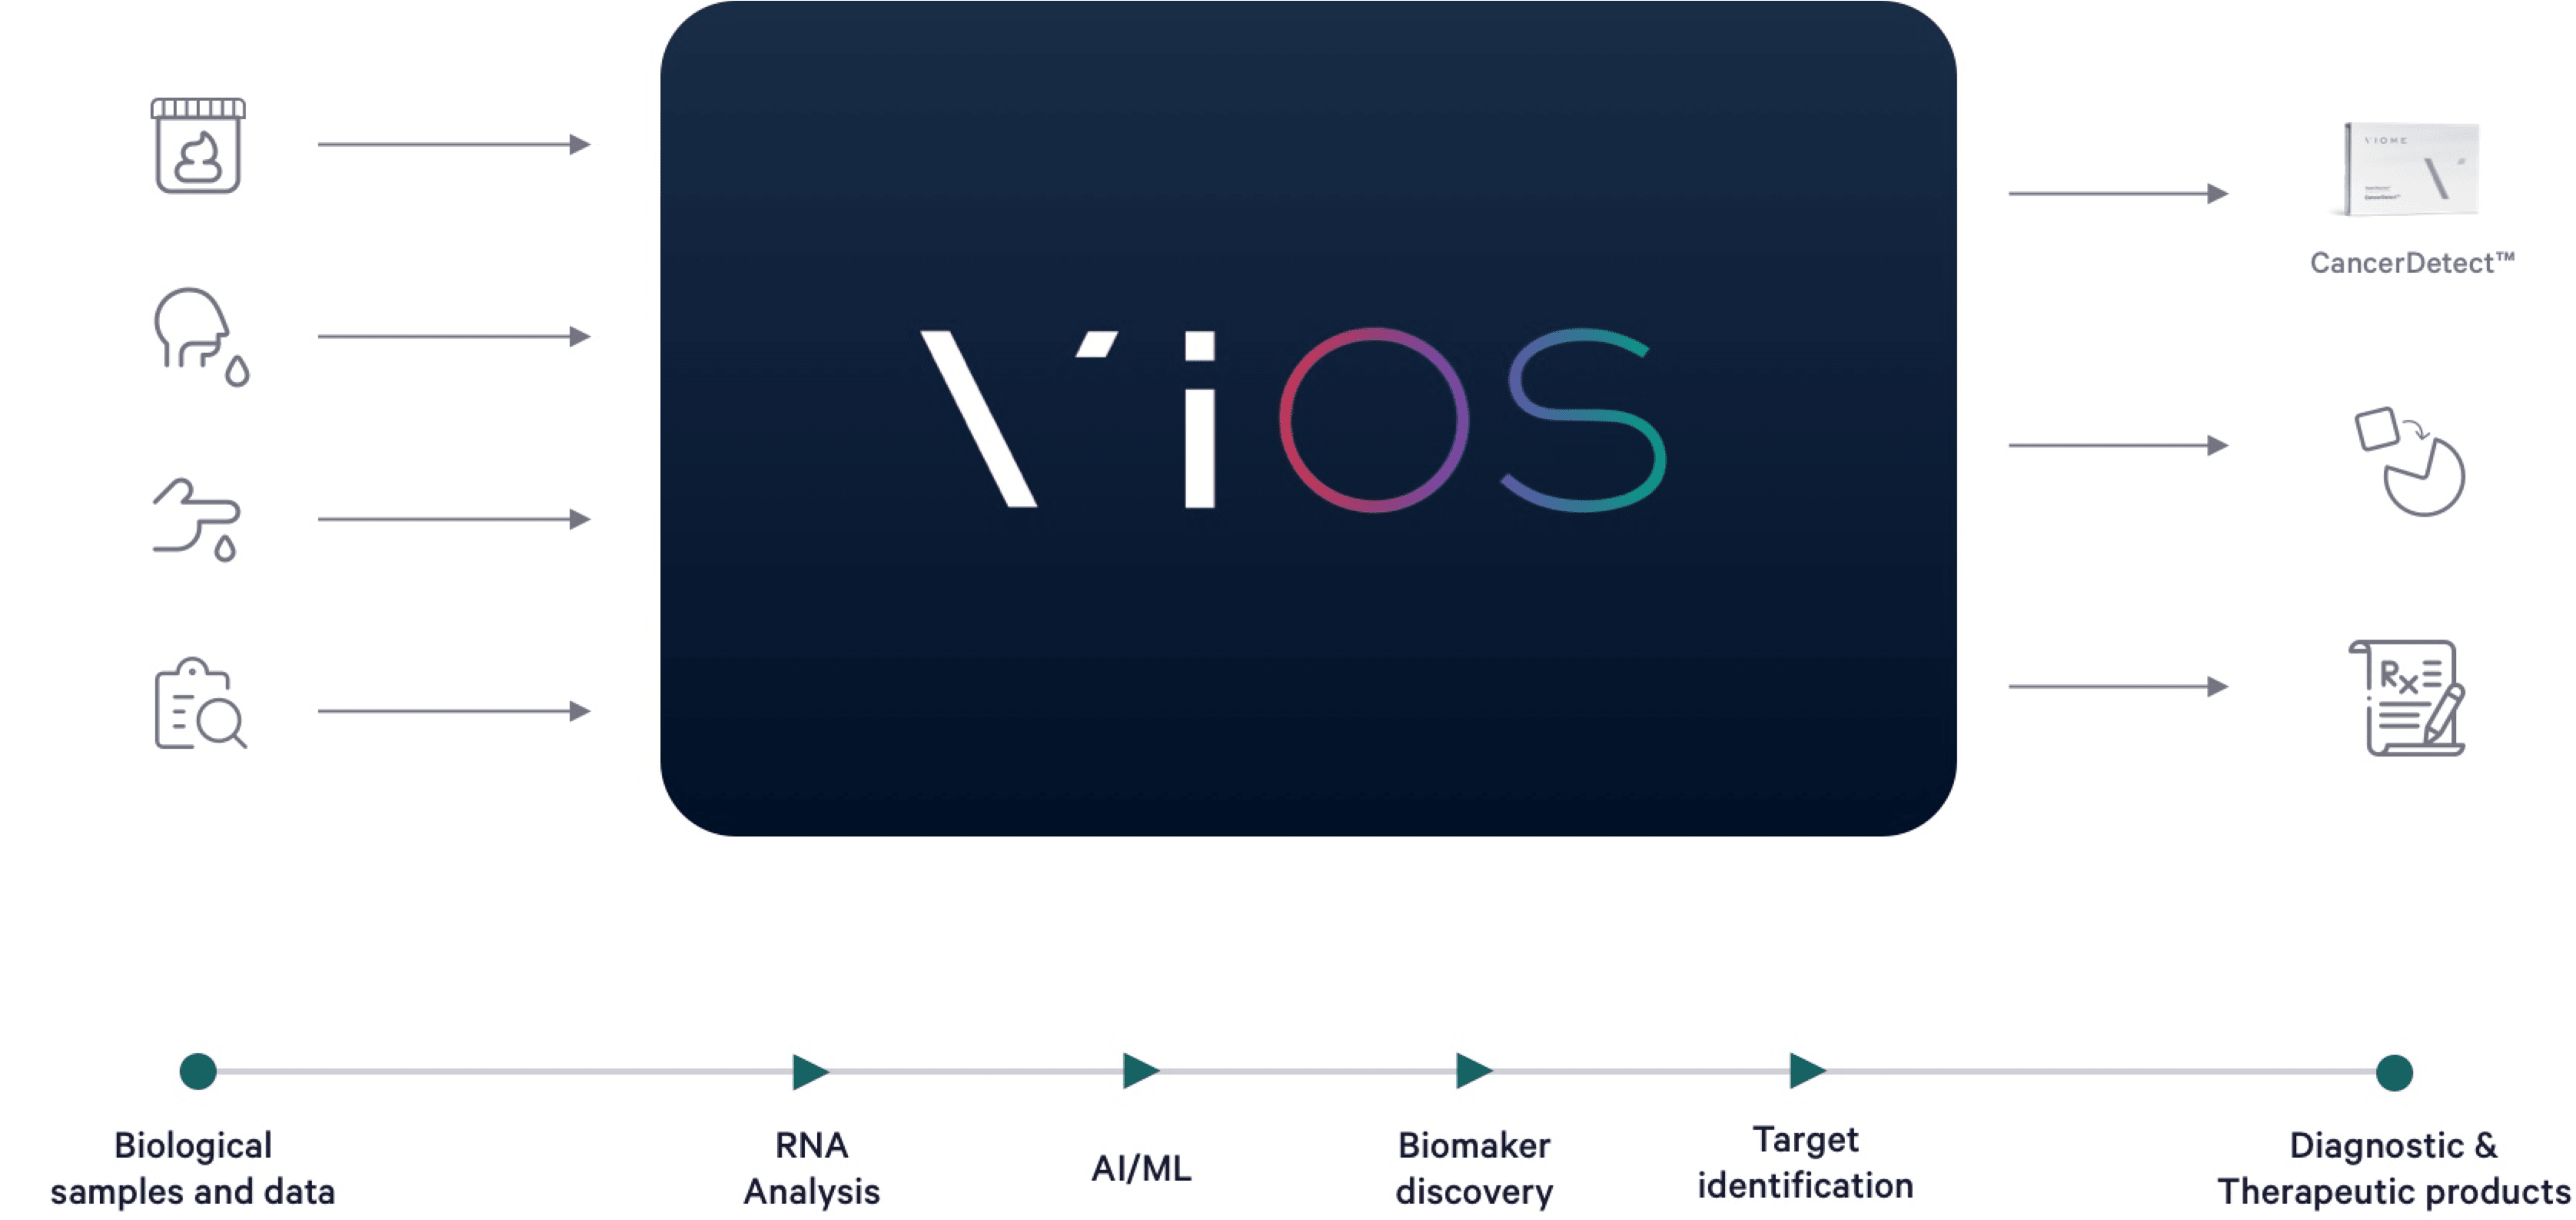 The ViOS Platform